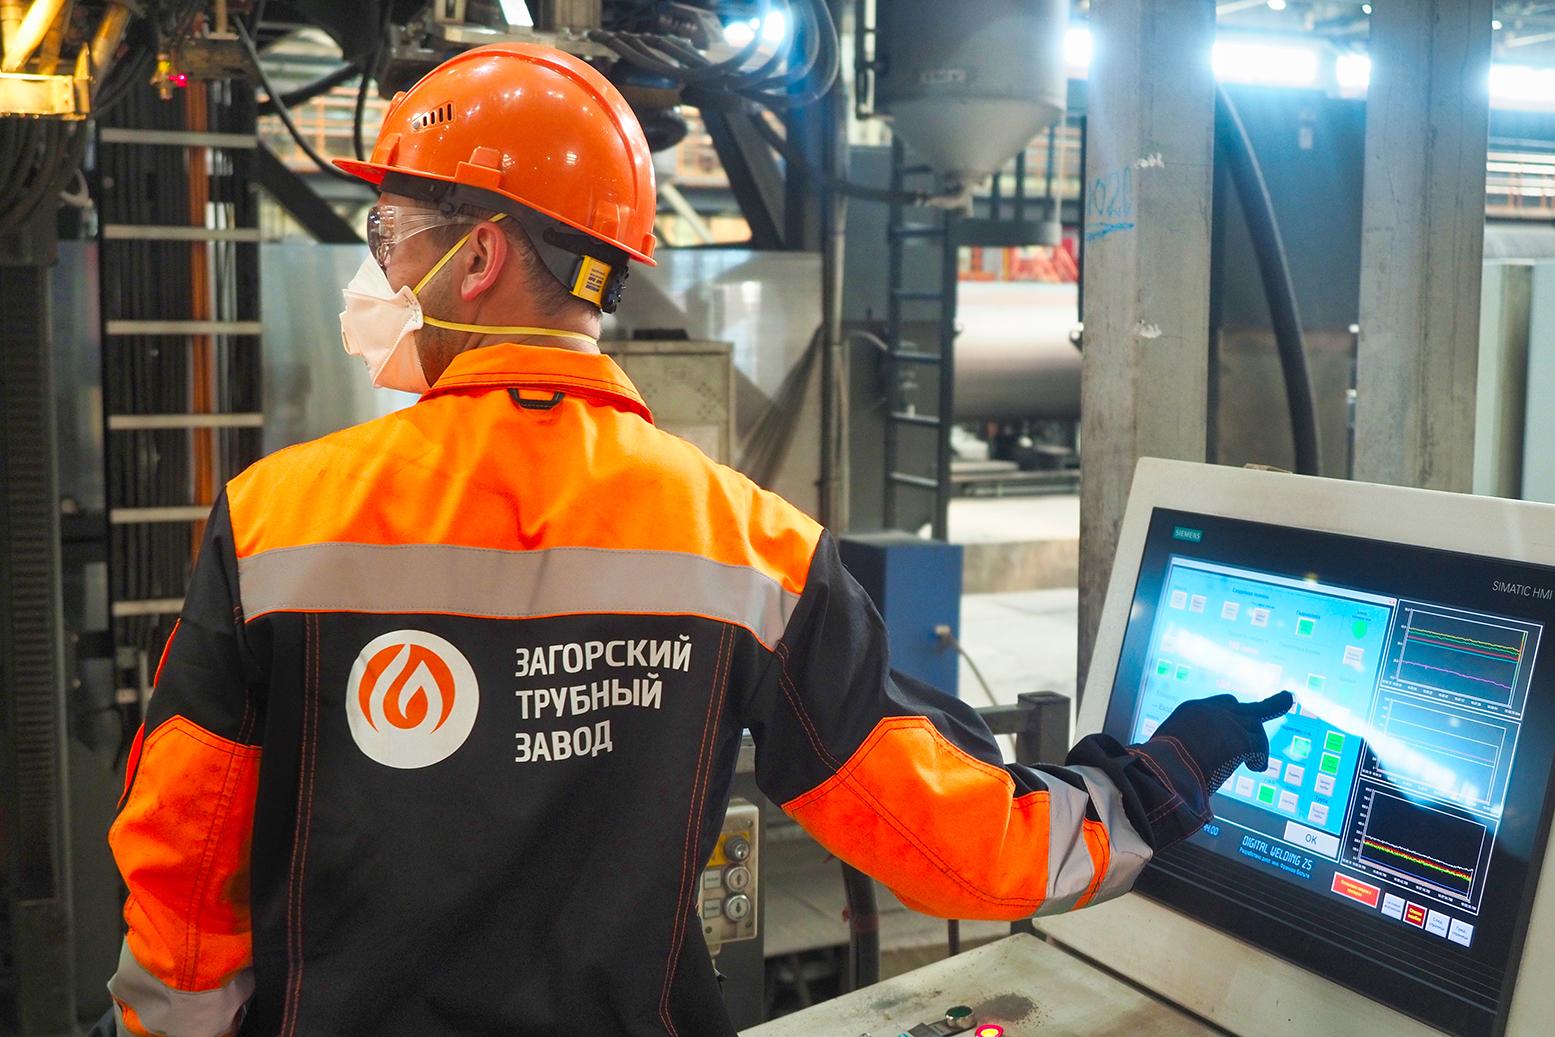 Загорский трубный завод внедрил первую систему Big Data для управления техническим обслуживанием и ремонтами

